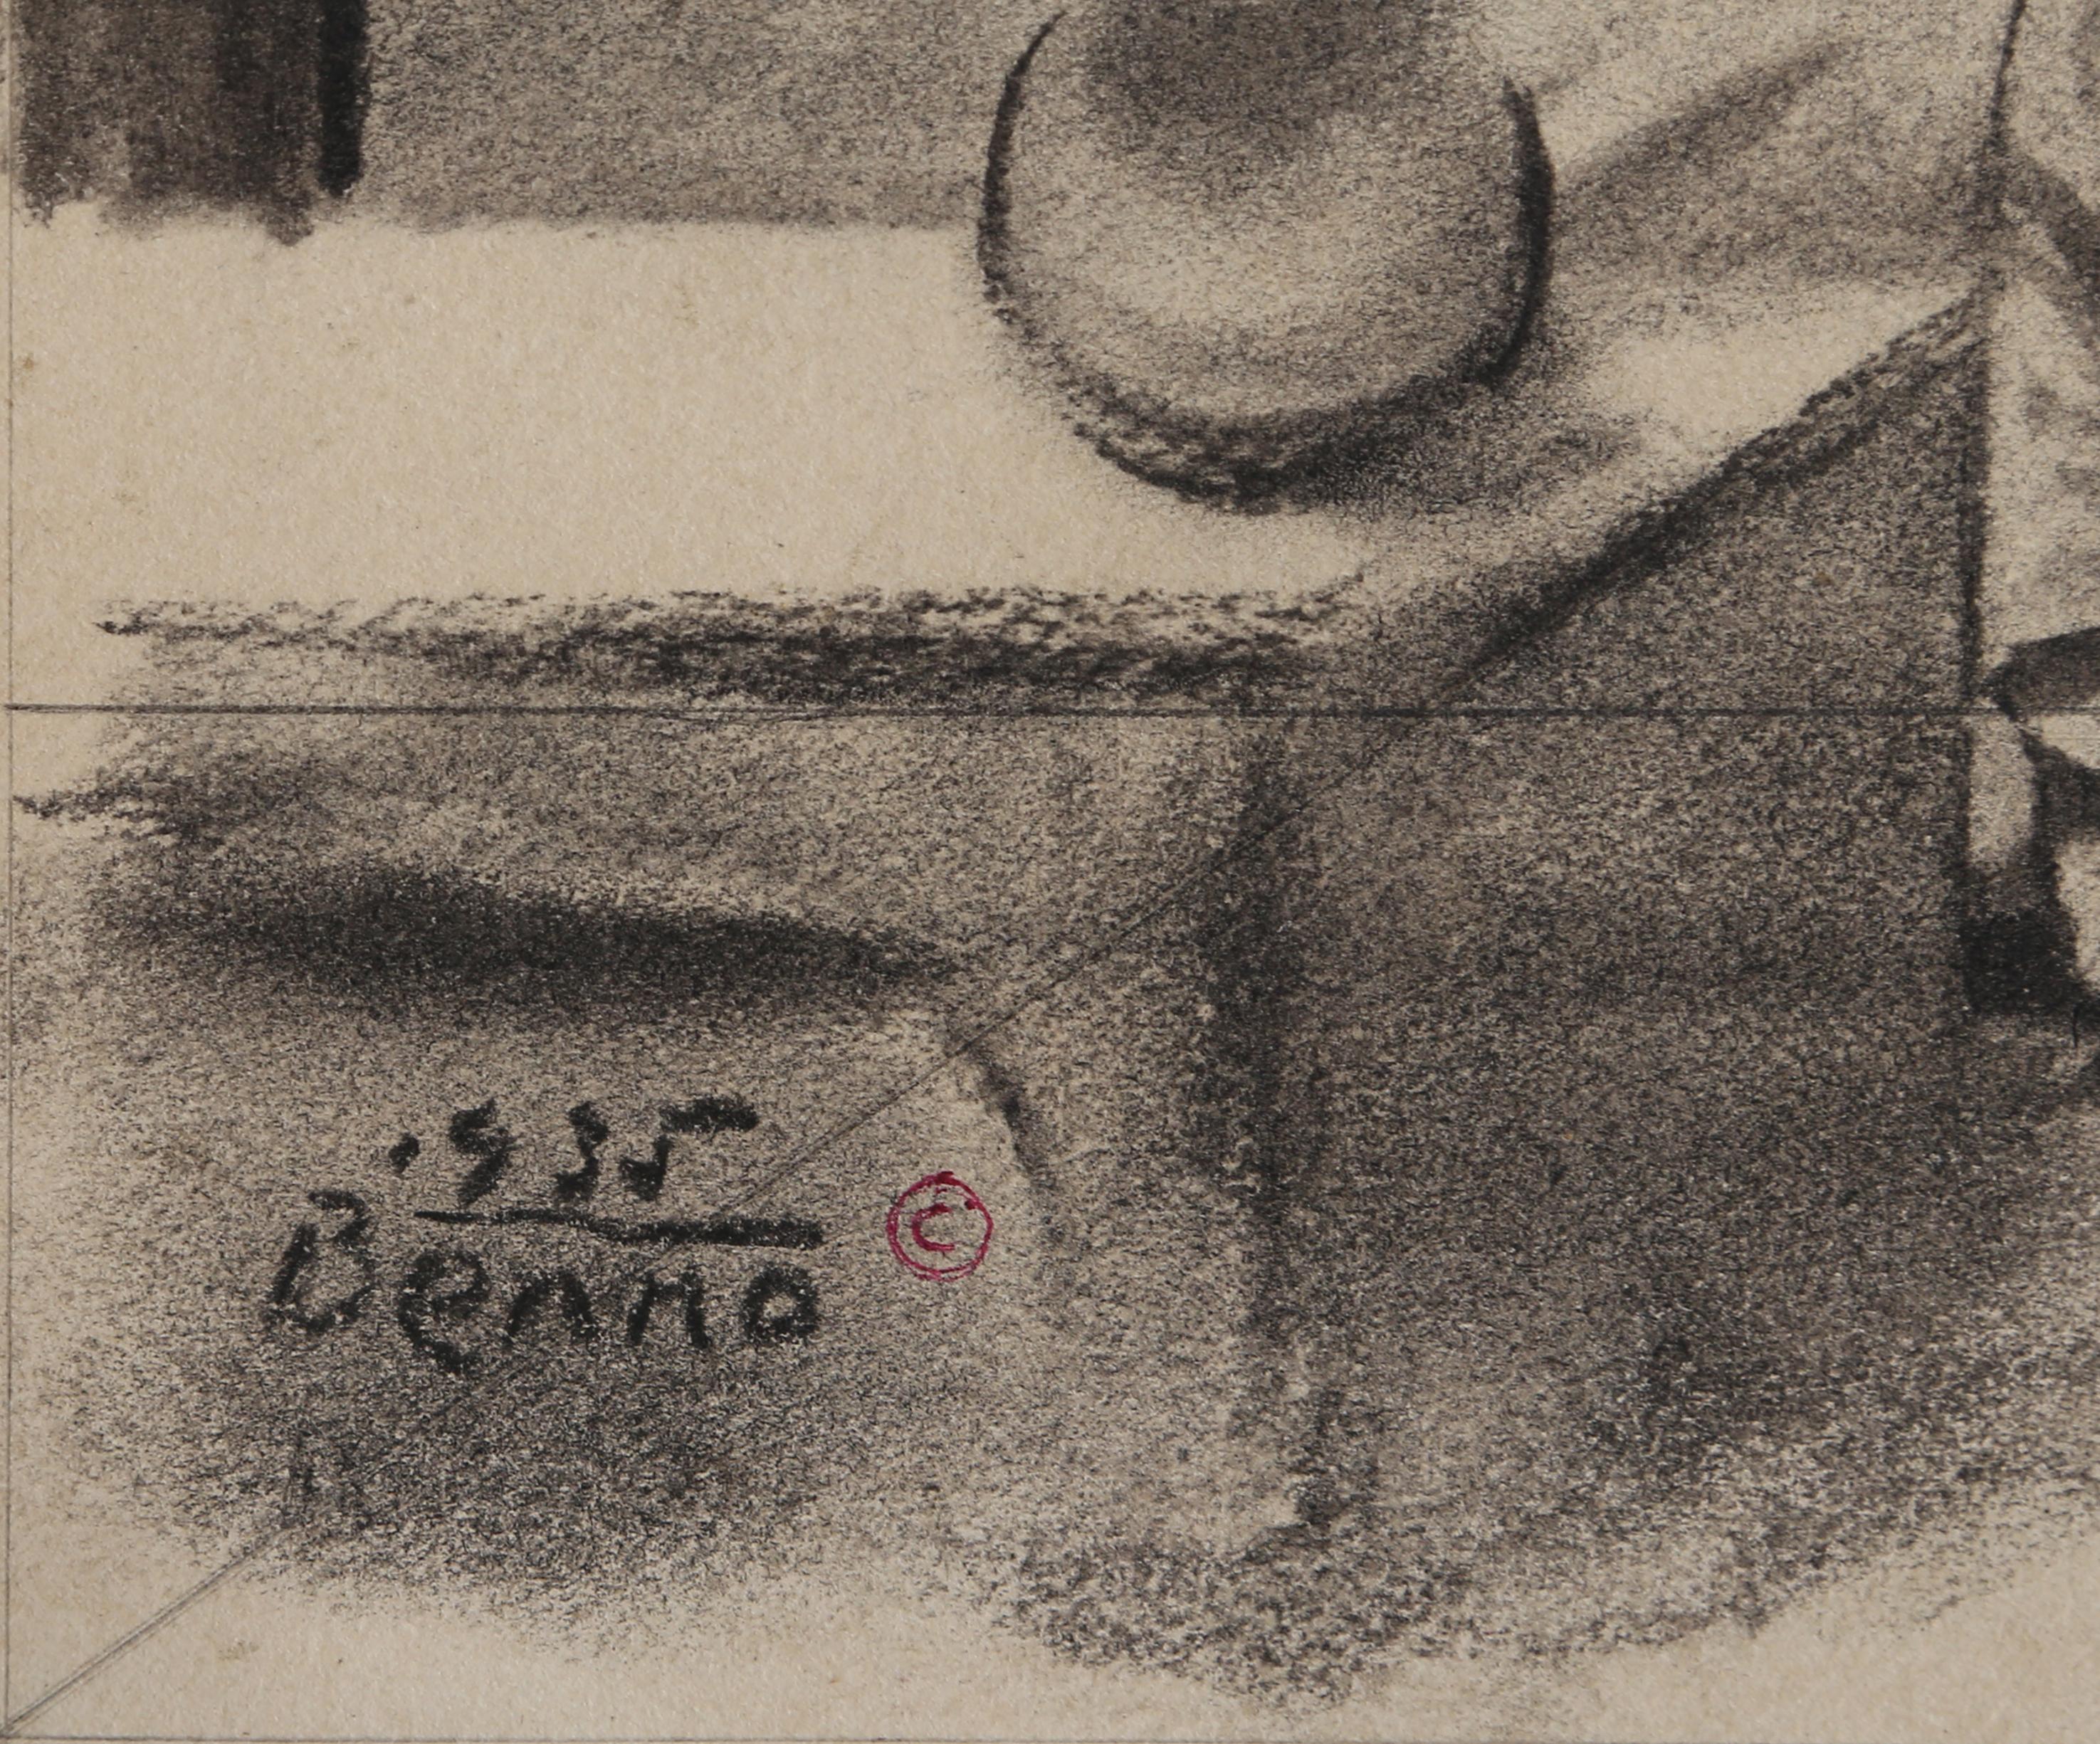 Odalisch, Surrealistische Kohle auf Papier Zeichnung von Benjamin Benno – Art von Benjamin G. Benno